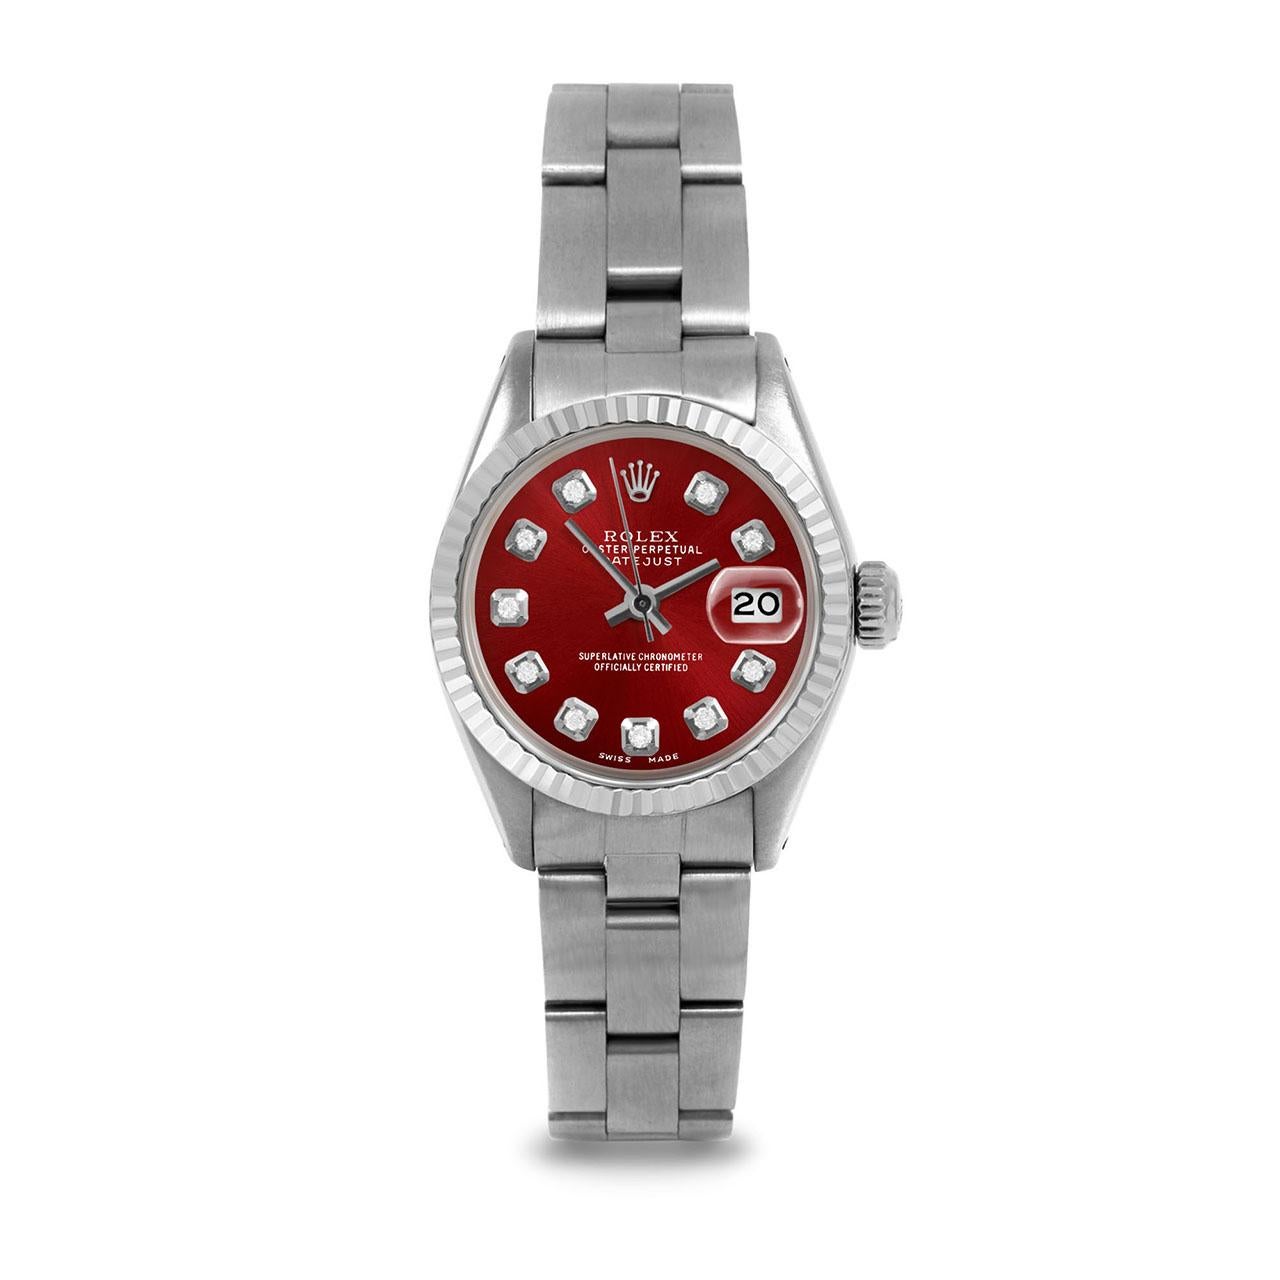 Montre Rolex 6917 Ladies 26mm Datejust d'occasion, cadran rouge personnalisé à diamants et lunette cannelée sur bracelet Rolex Oyster en acier inoxydable.   

SKU 6917-SS-RED-DIA-AM-FLT-OYS


Marque/Modèle :        Rolex Datejust
Numéro de modèle : 